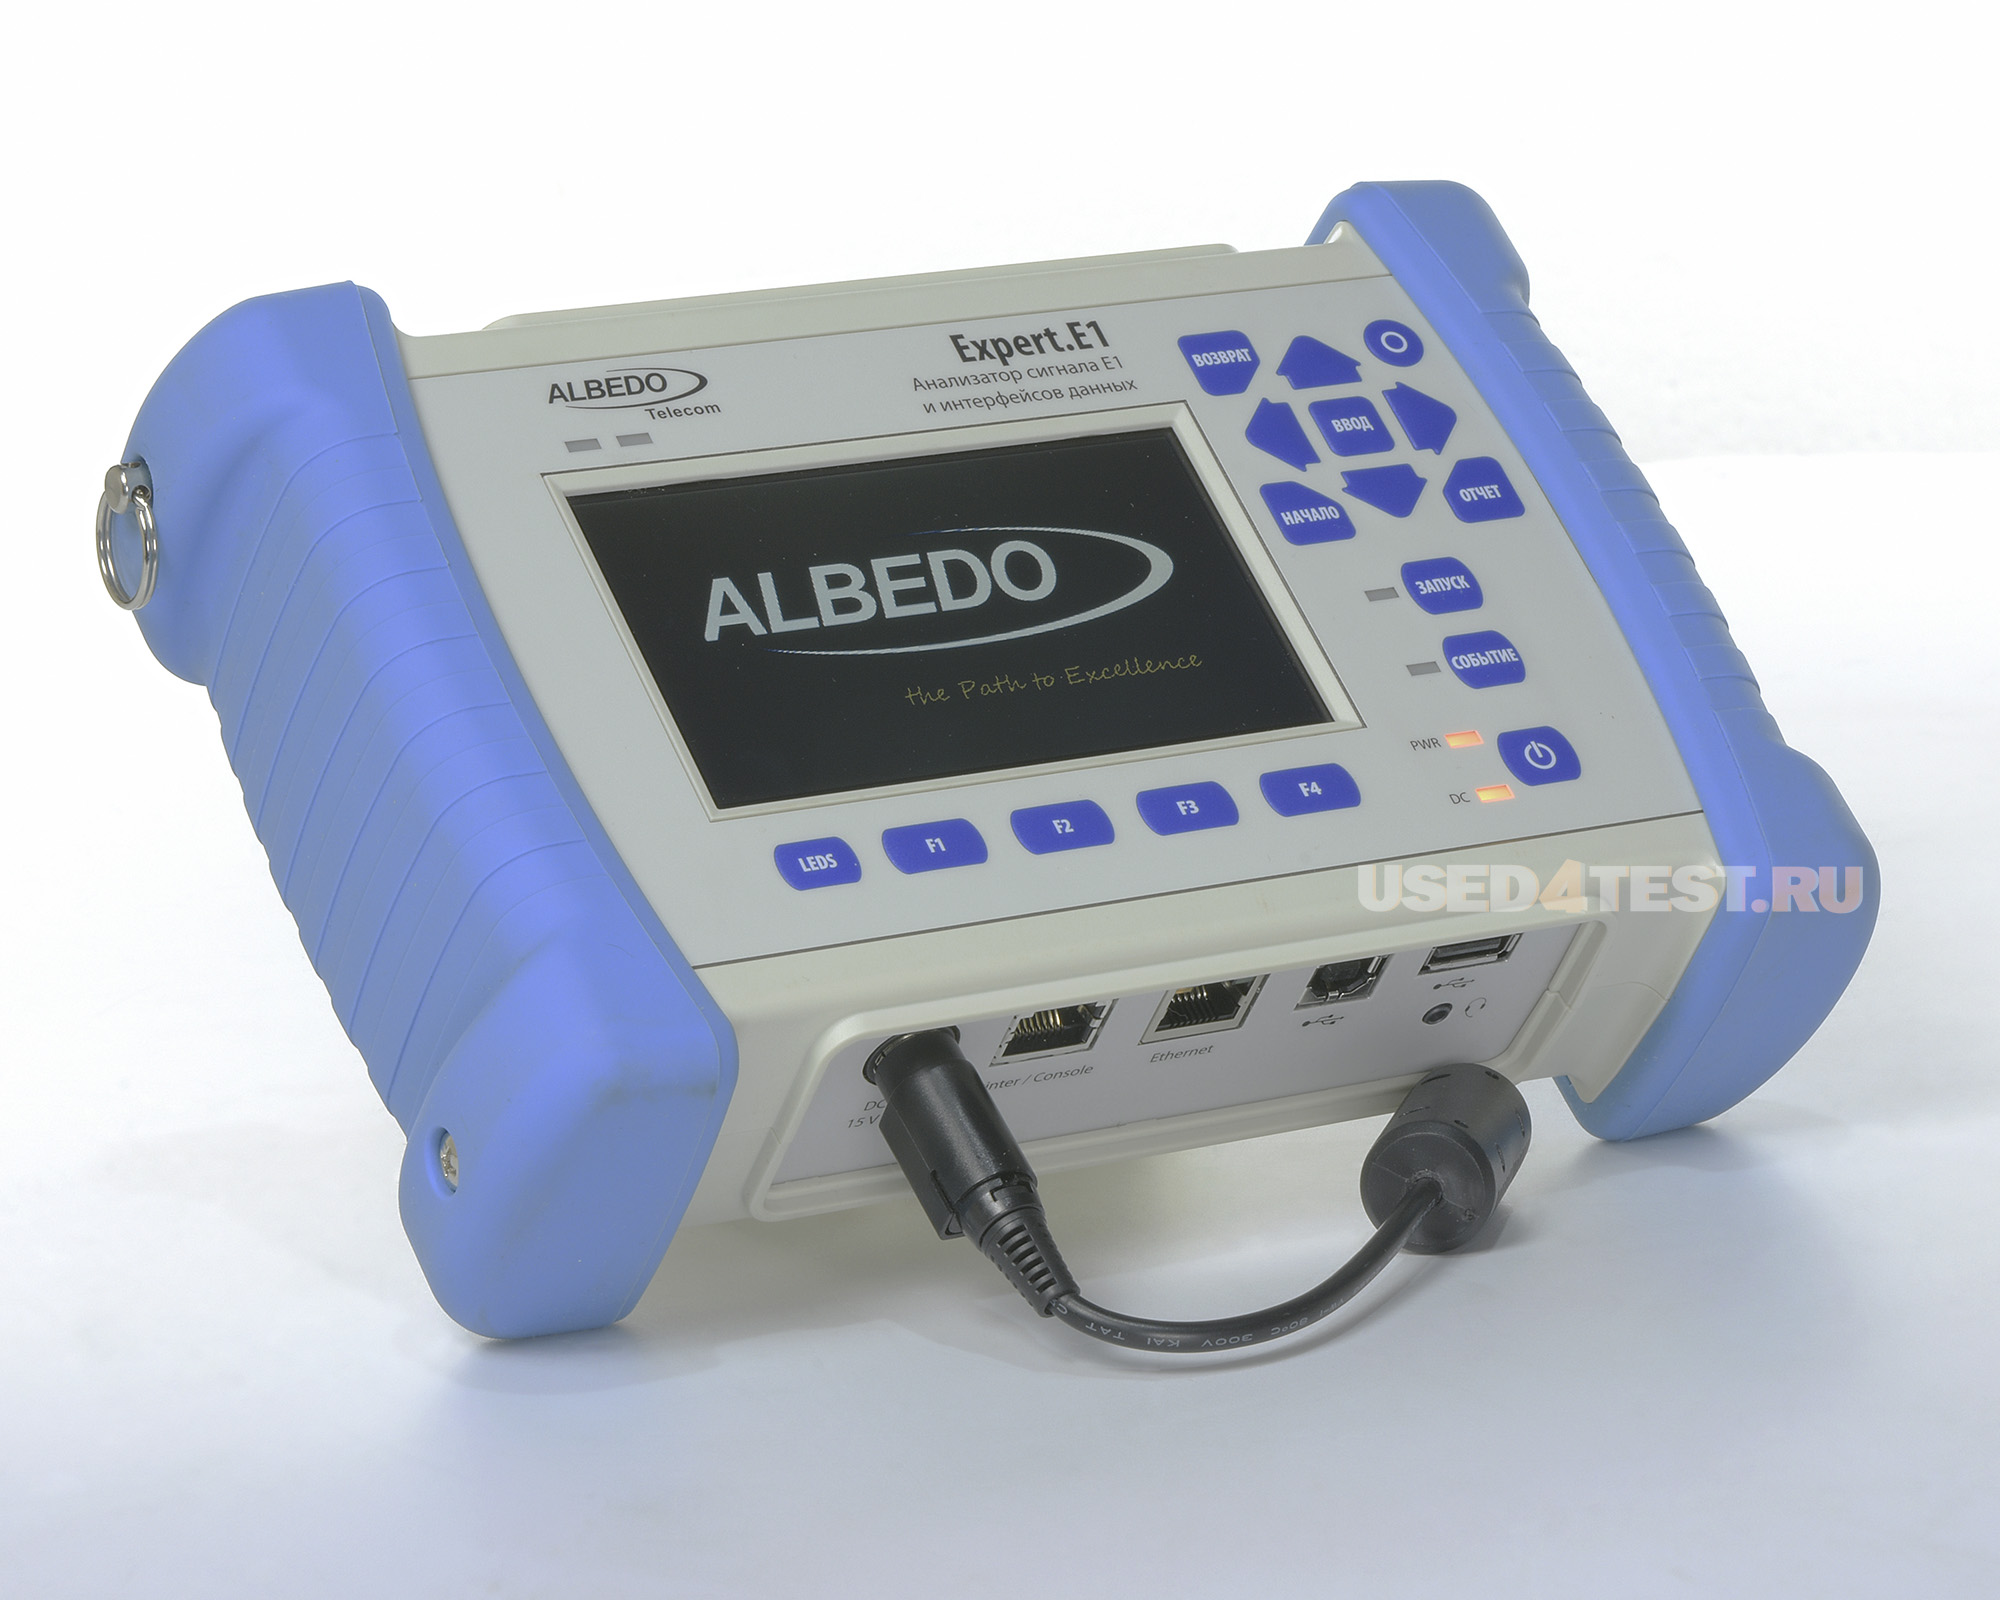 Анализатор сигнала E1 и интерфейсов данных ALBEDO Expert.E1 AT-2048